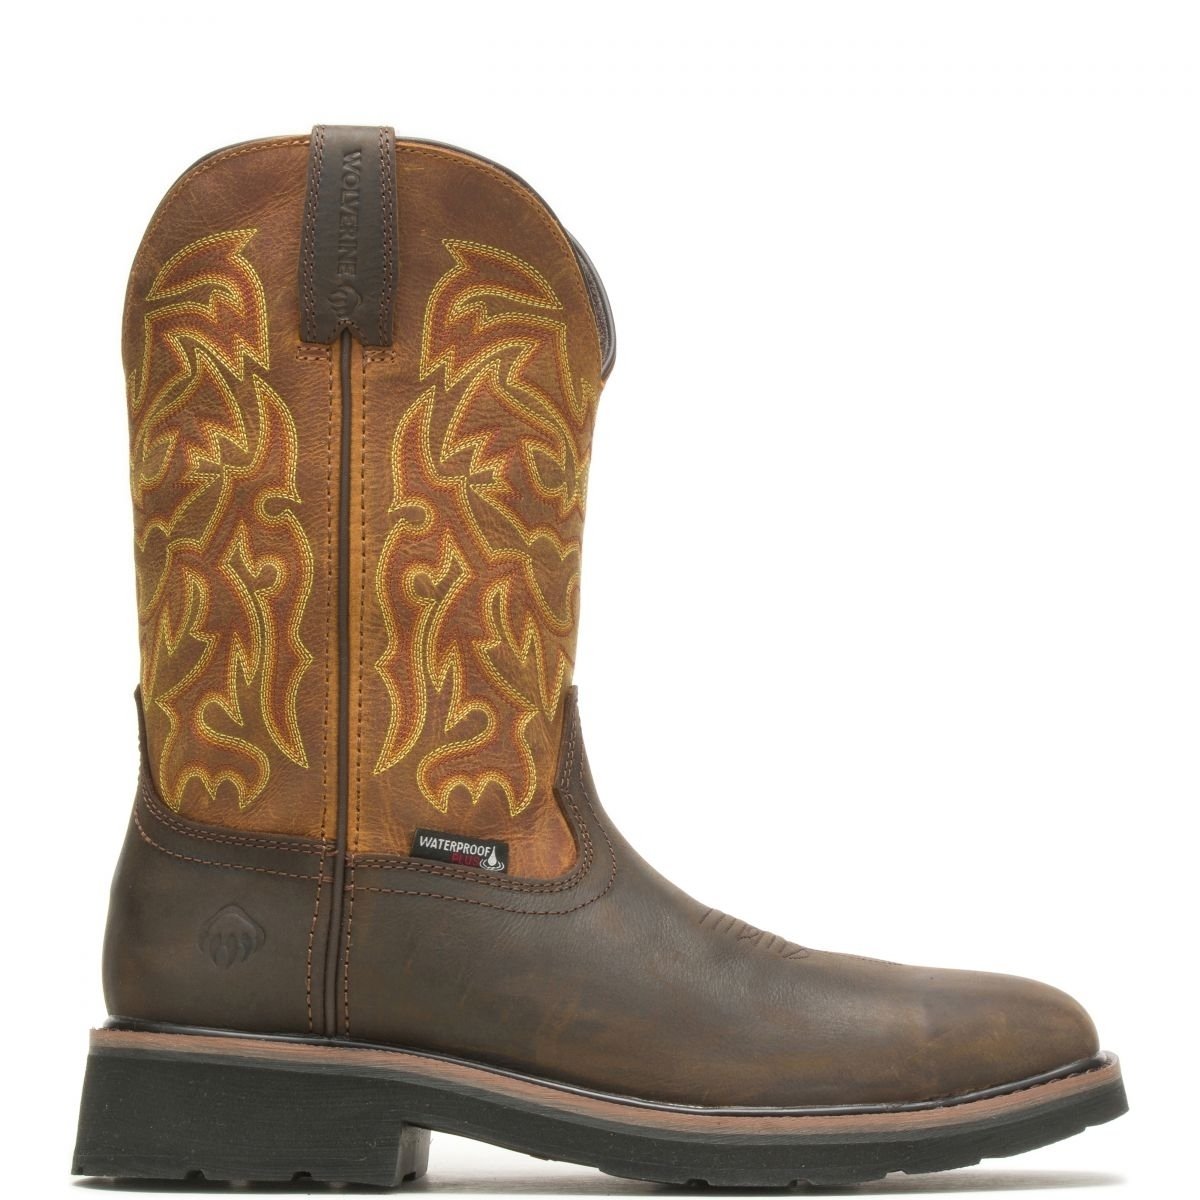 WOLVERINE Men's Rancher 10 Steel Toe Waterproof Work Boot Golden/Brown - W221029 GOLDEN/BROWN - GOLDEN/BROWN, 10-EW